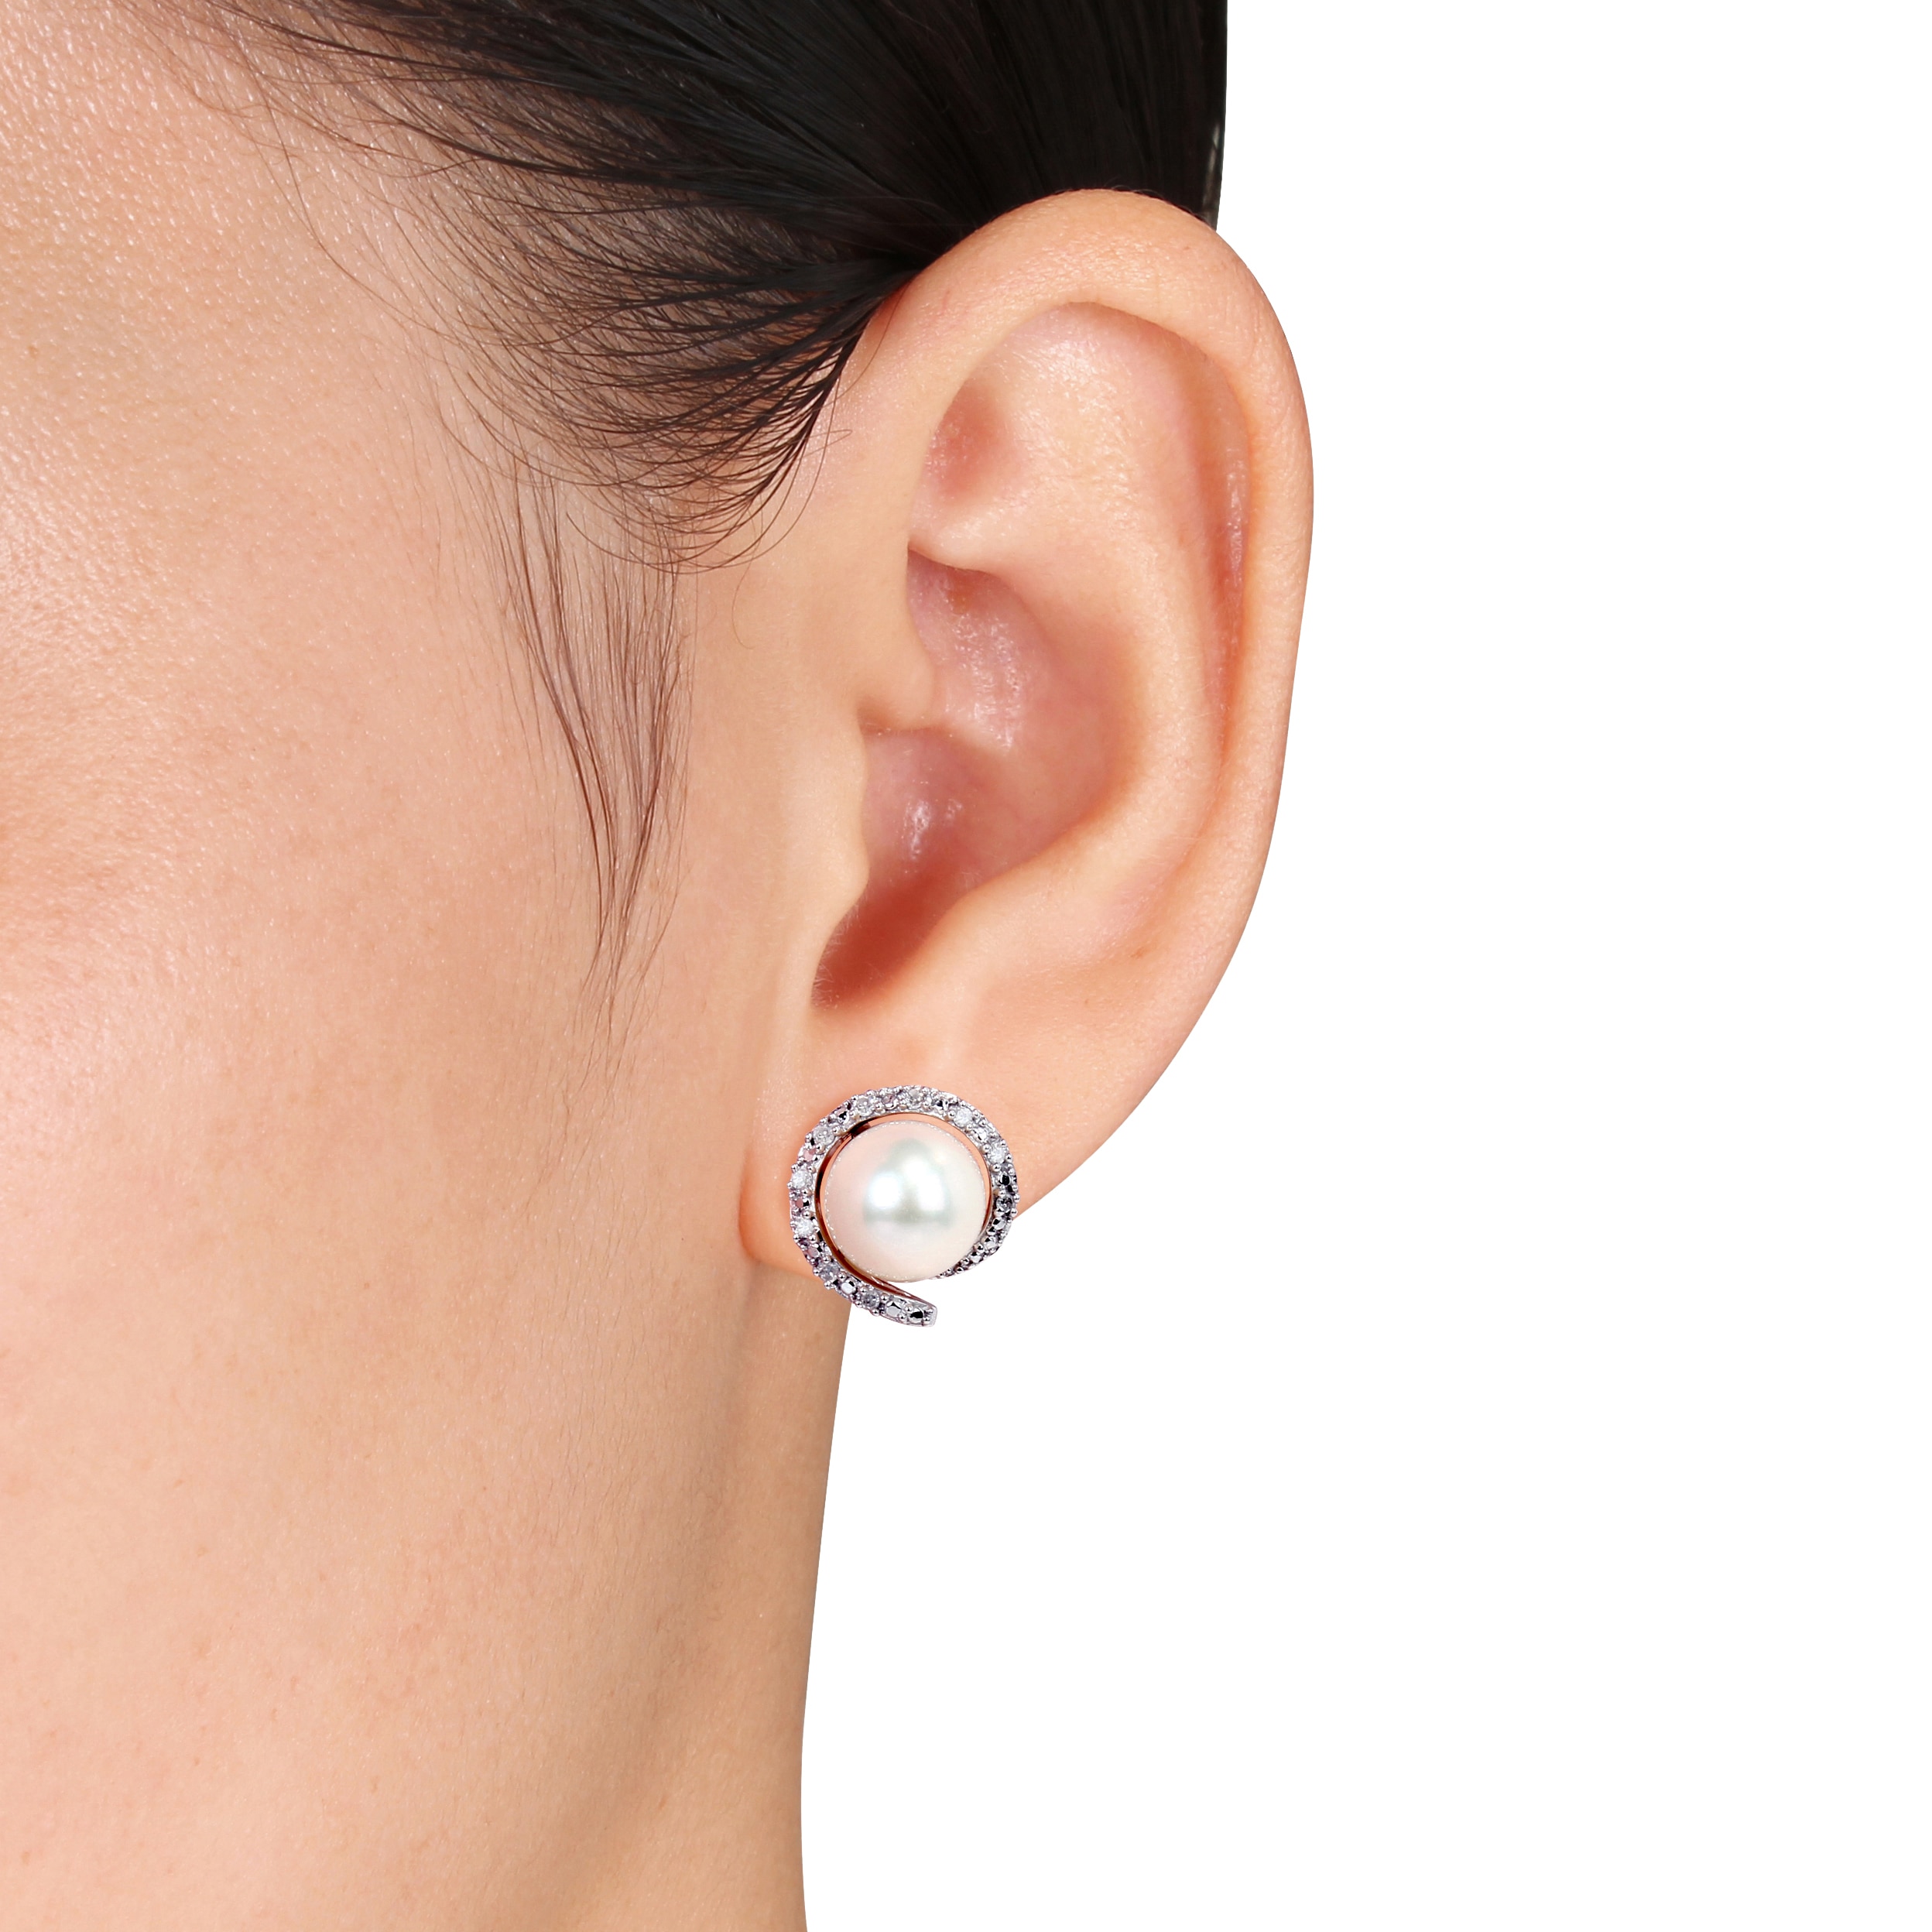 Jewellery - Earrings - Stud Earrings - Sofia B 10K White Gold